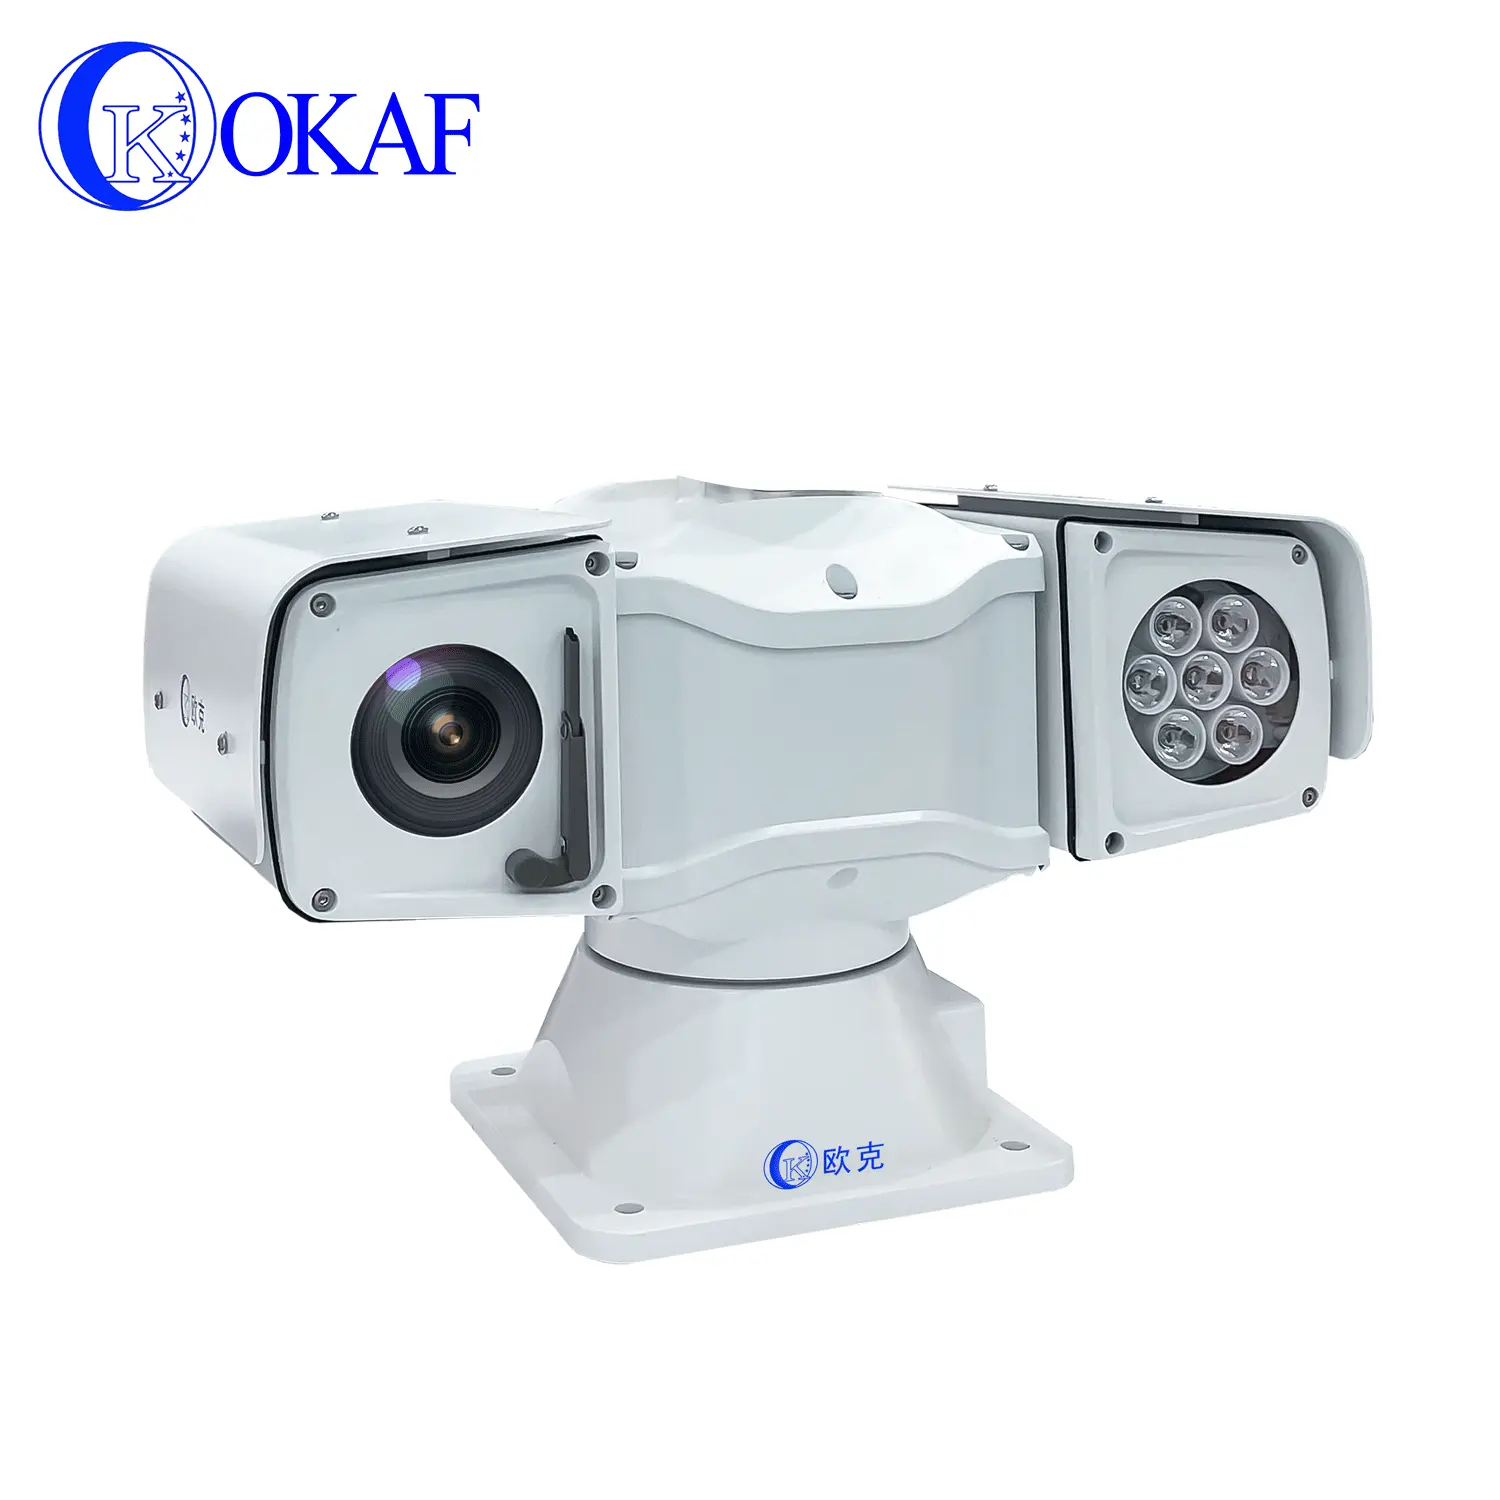 Zoom ottico 30x 120m distanza visione notturna a infrarossi IR a lunga distanza telecamera IP PTZ montata su veicolo a 360 gradi